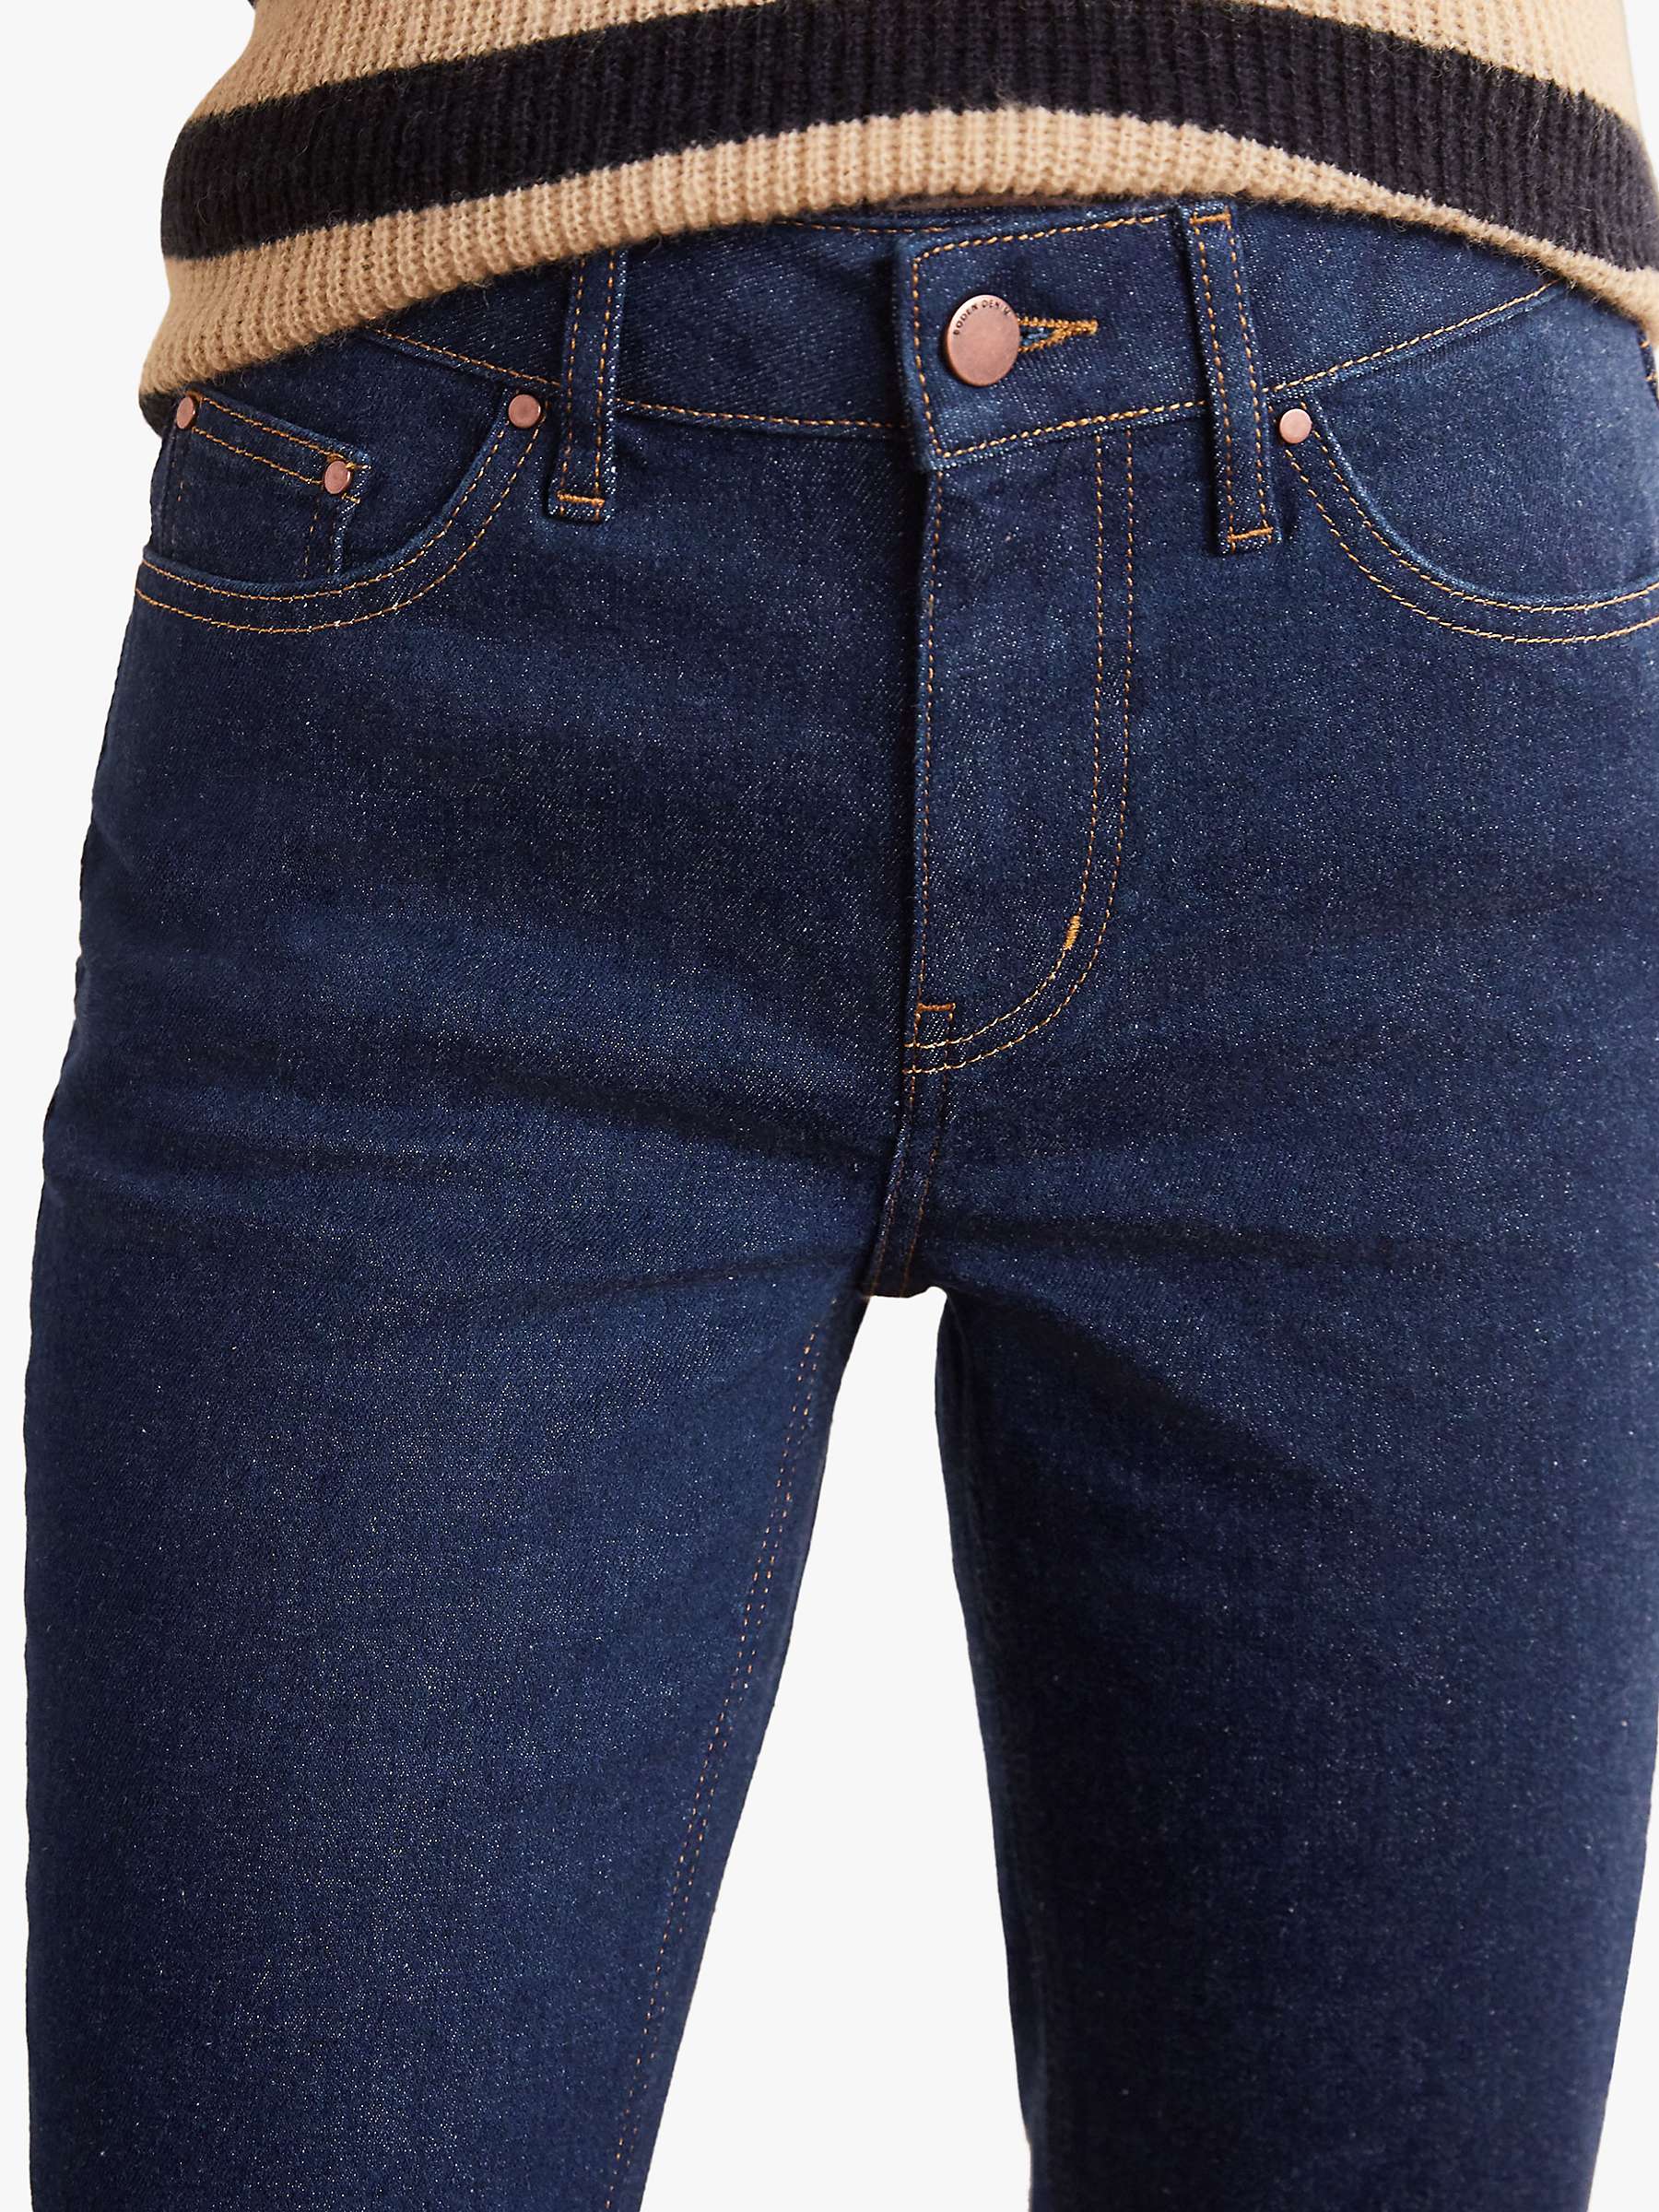 Buy Boden Girlfriend Jeans, Indigo Online at johnlewis.com